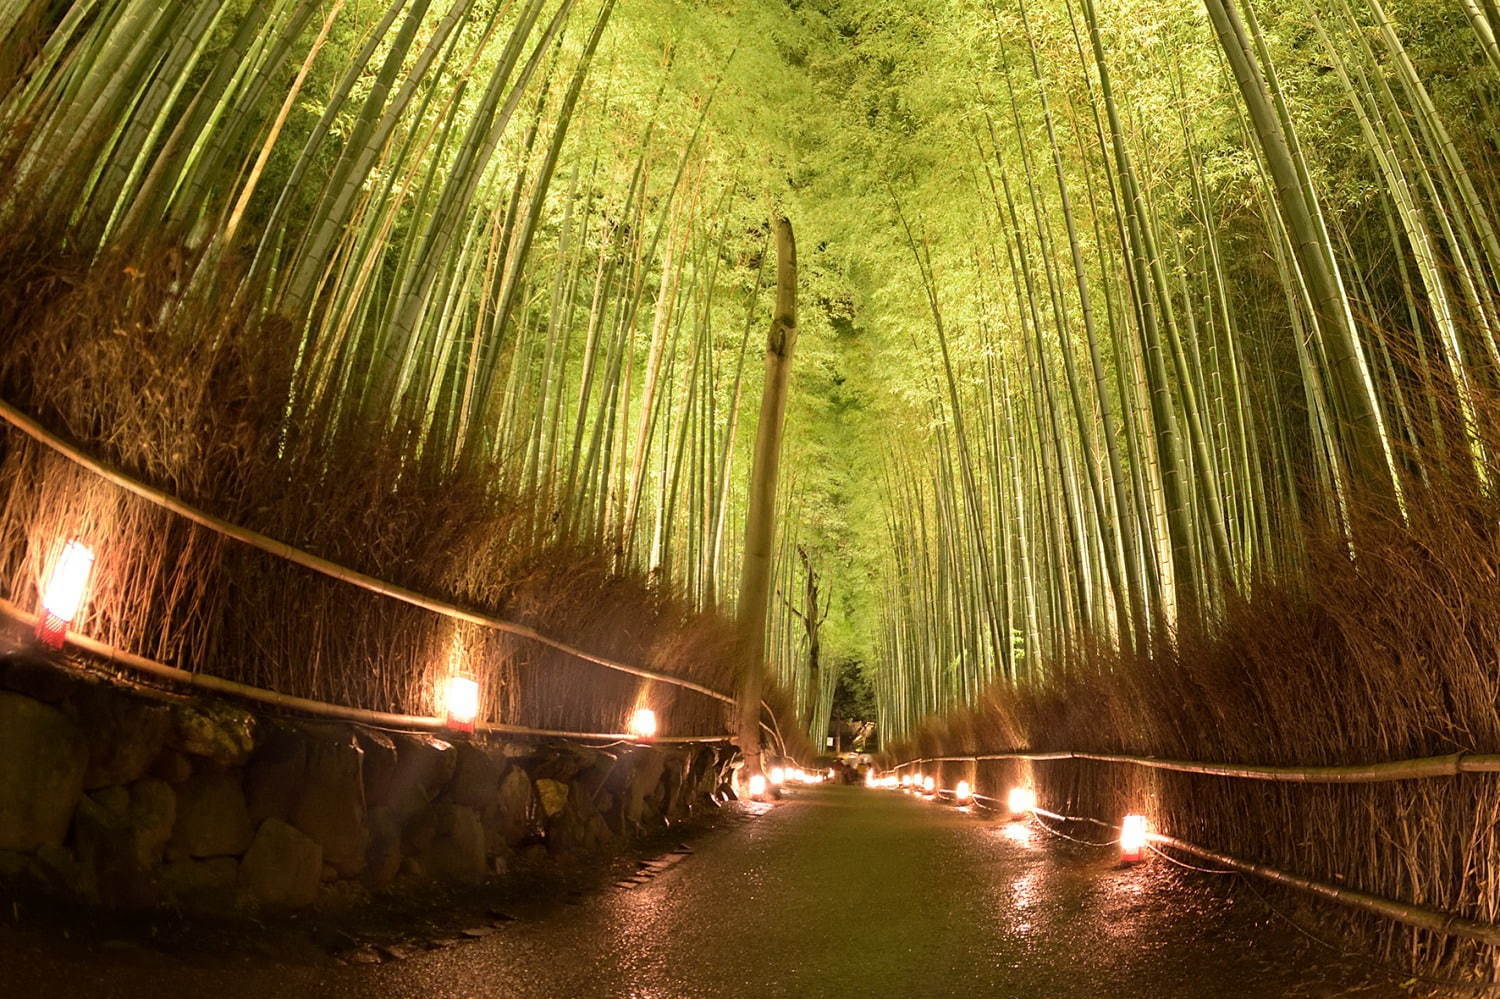 京都 嵐山 観光ガイド 渡月橋や竹林の小径など名所を巡るモデルコース アクセスマップ特集 ファッションプレス